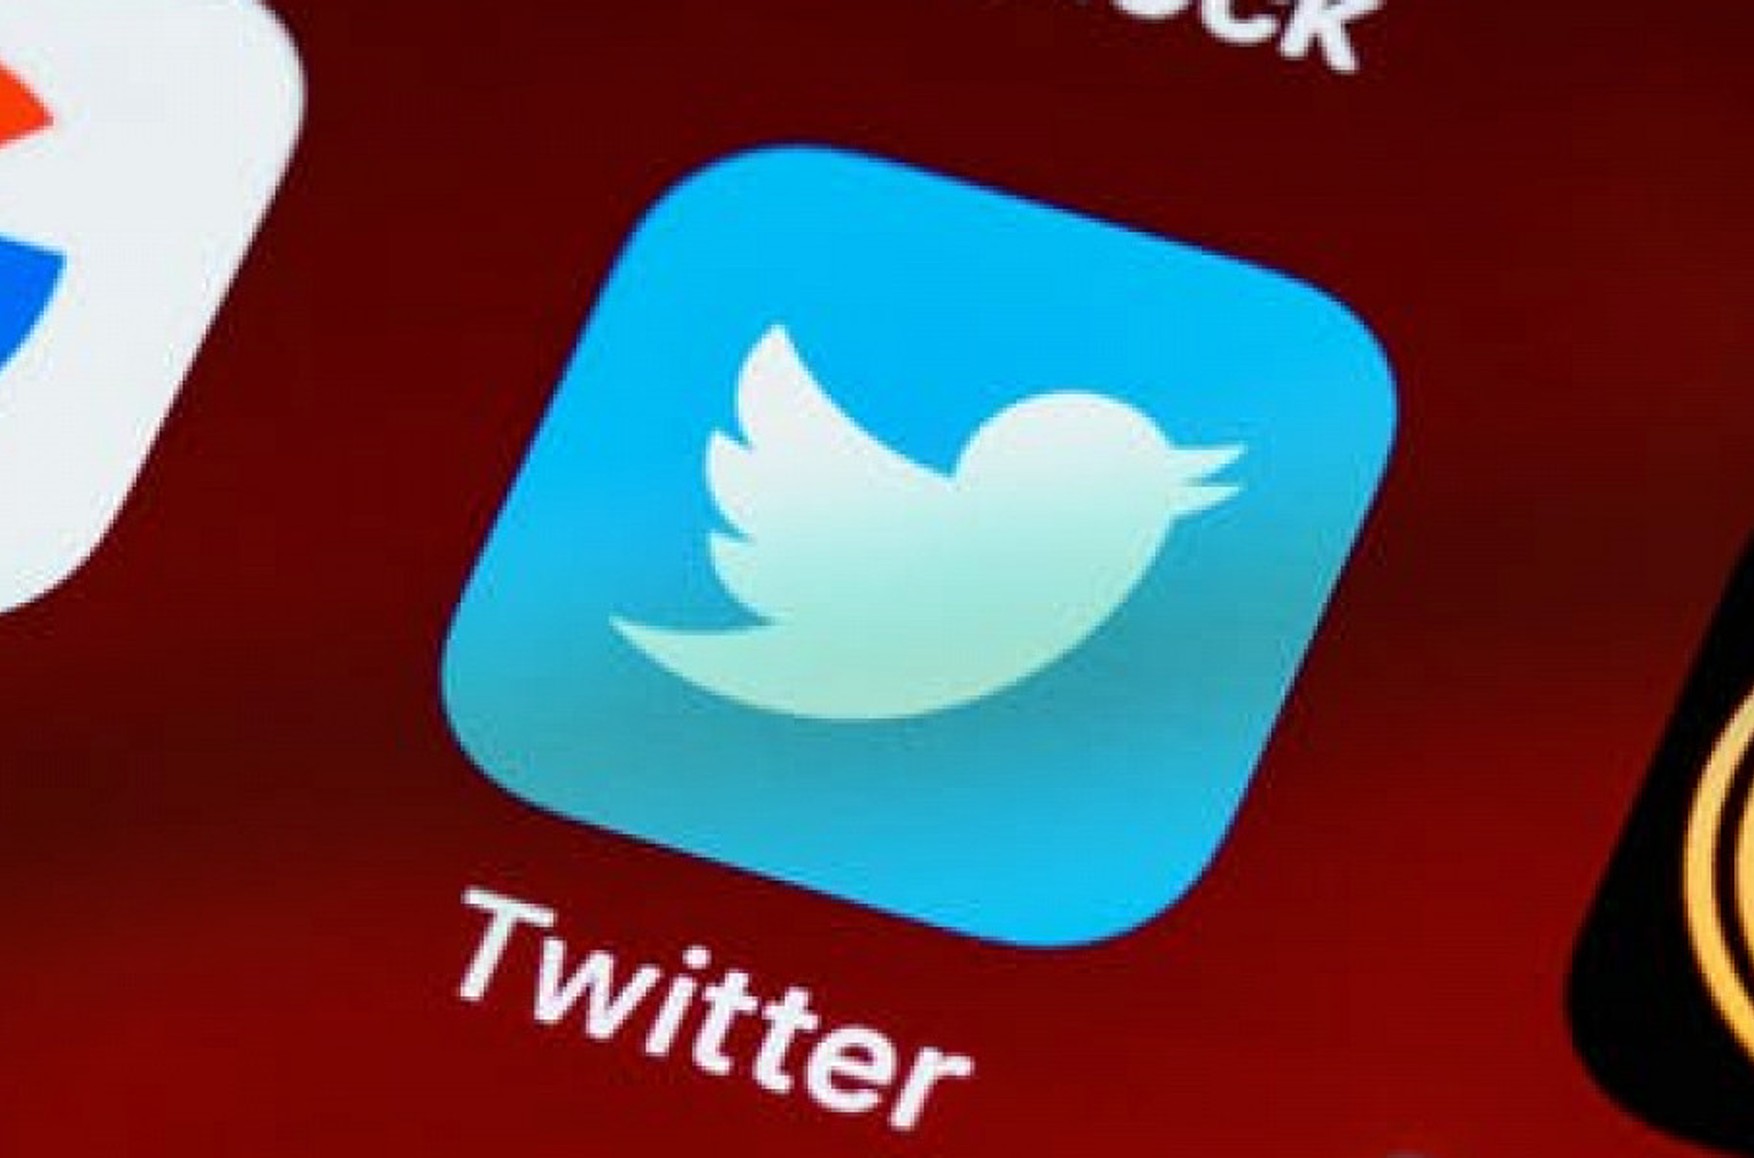 Після «уповільнення» Twitter перестали відкриватися сайти РКН, Держдуми і Кремля. Twitter працює в стандартному режимі